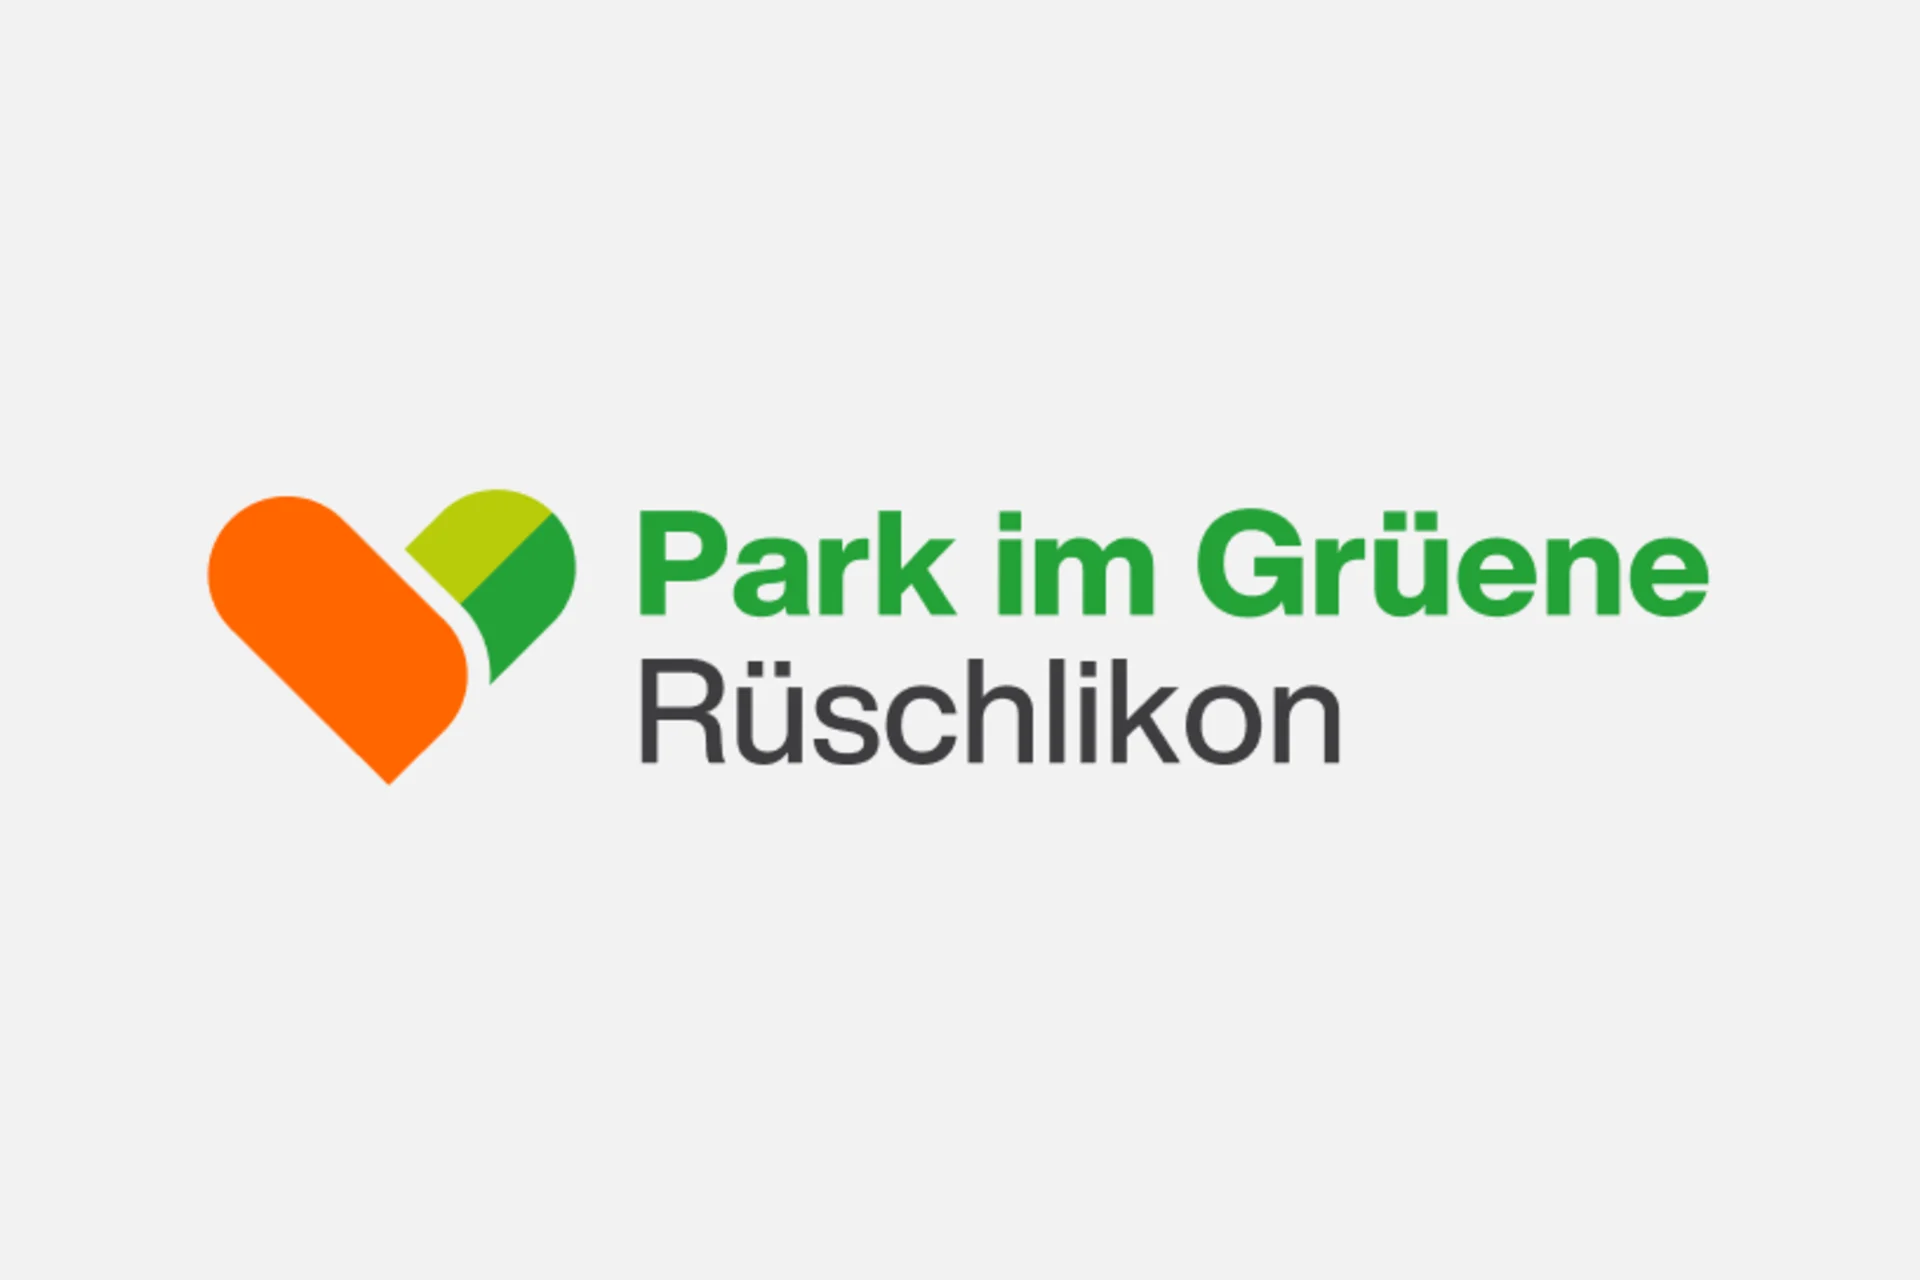 Park im Grüene, Rüschlikon logo